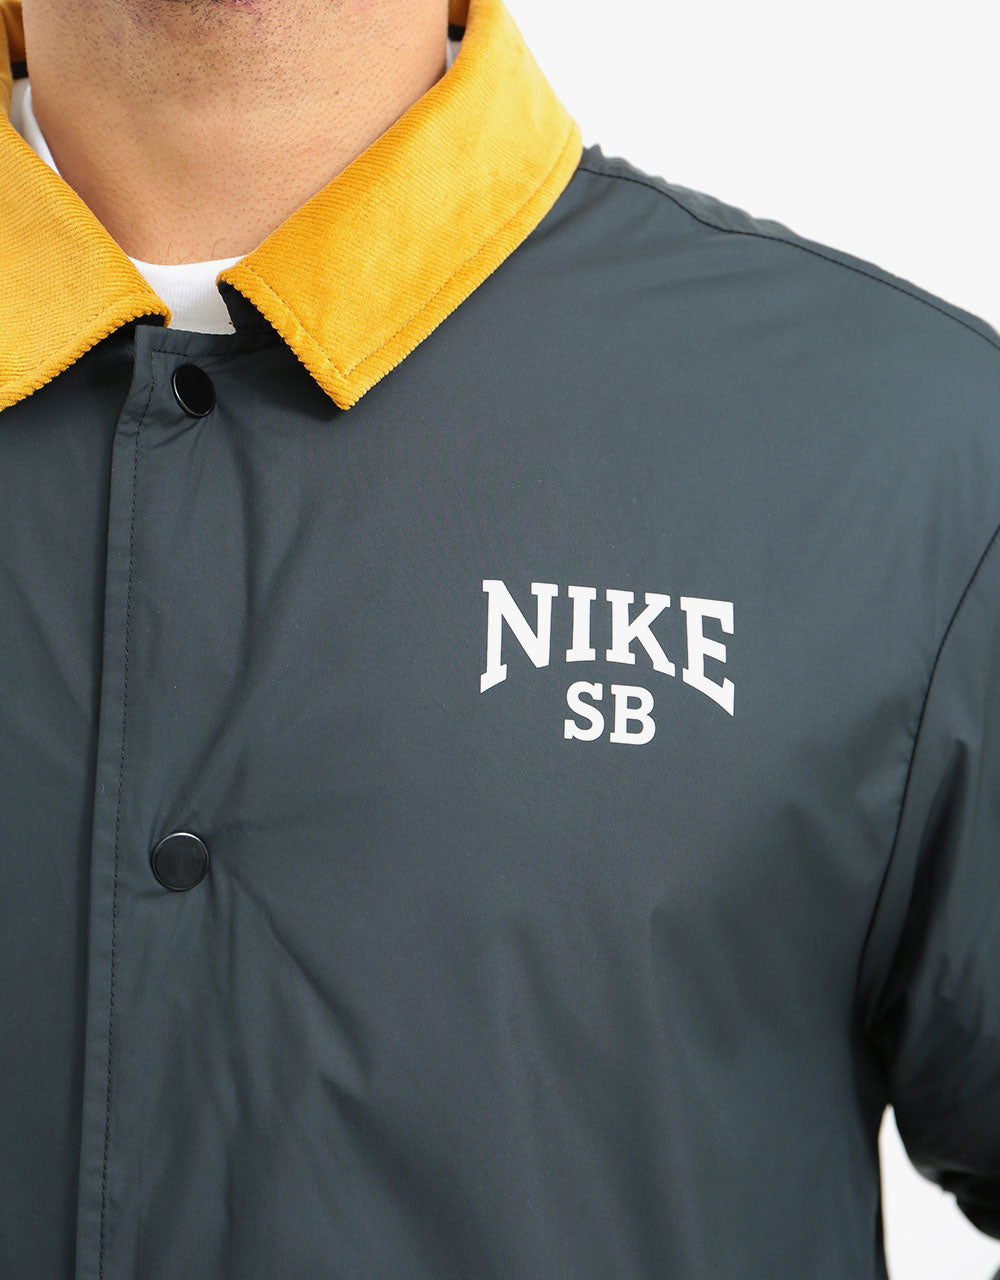 Nike SB Novelty Coaches Jacket - Black/Chutney/White/White